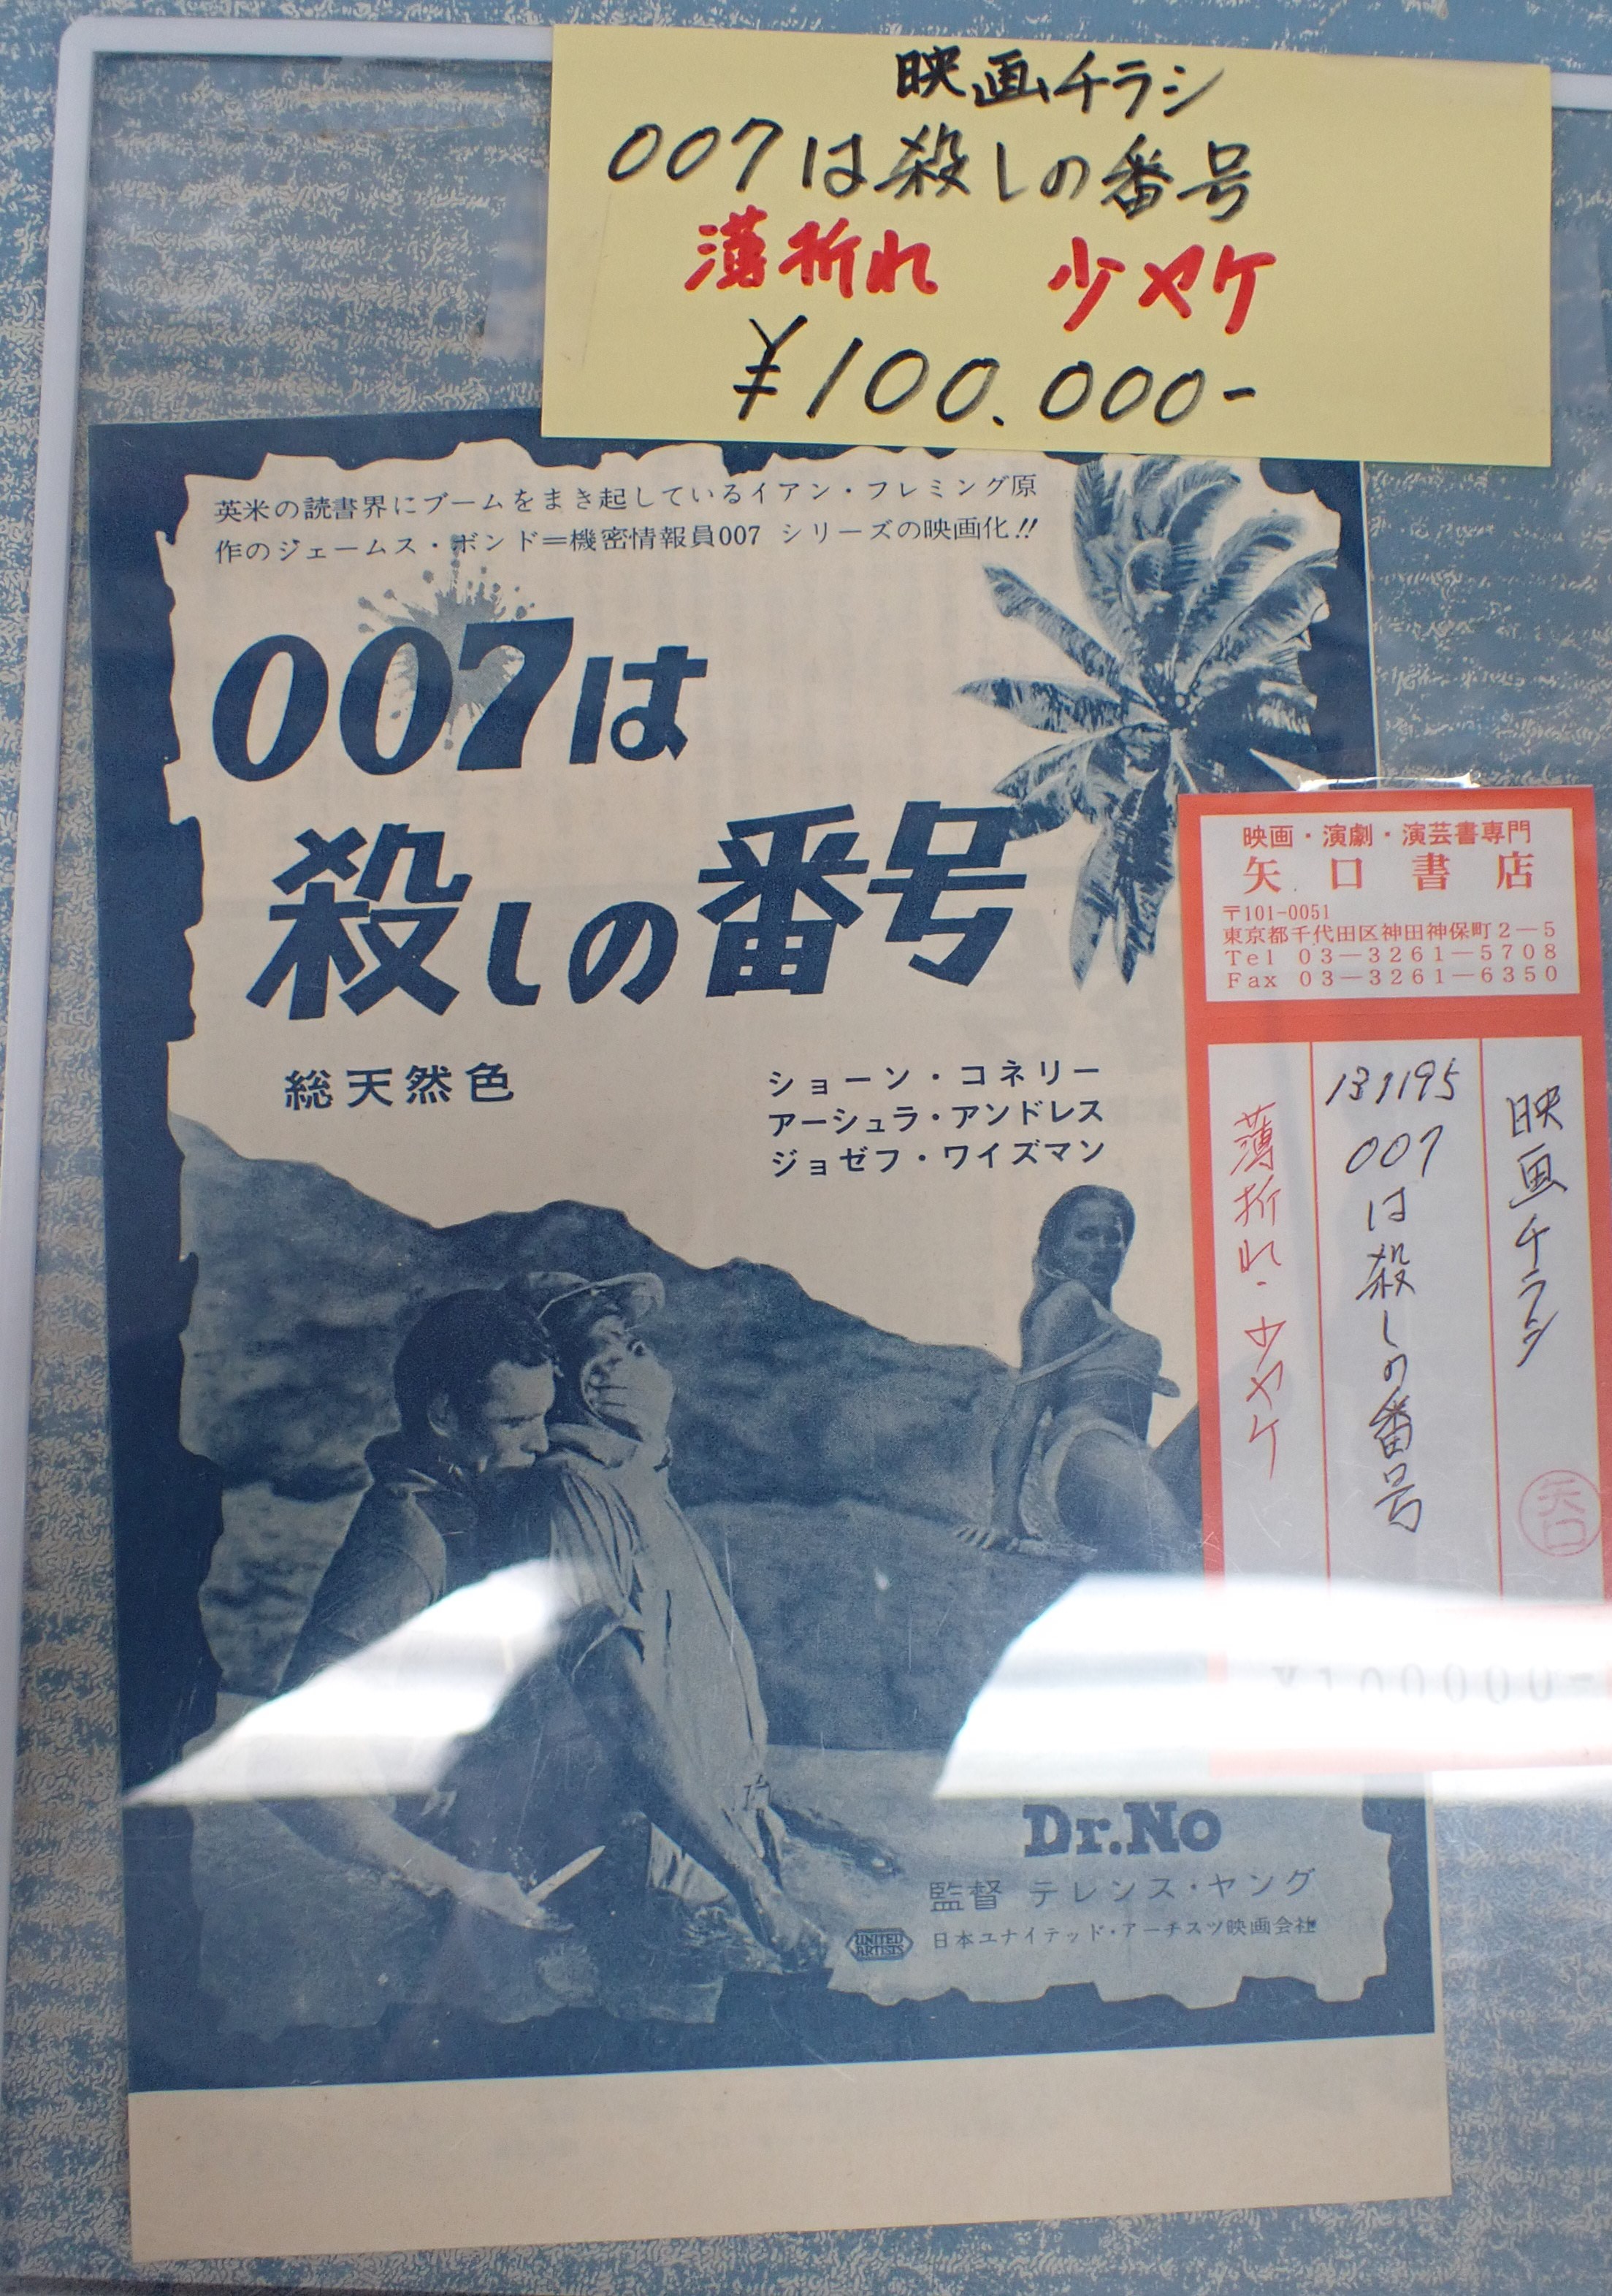 【数量は多】 007は殺しの番号　パンフレット 印刷物